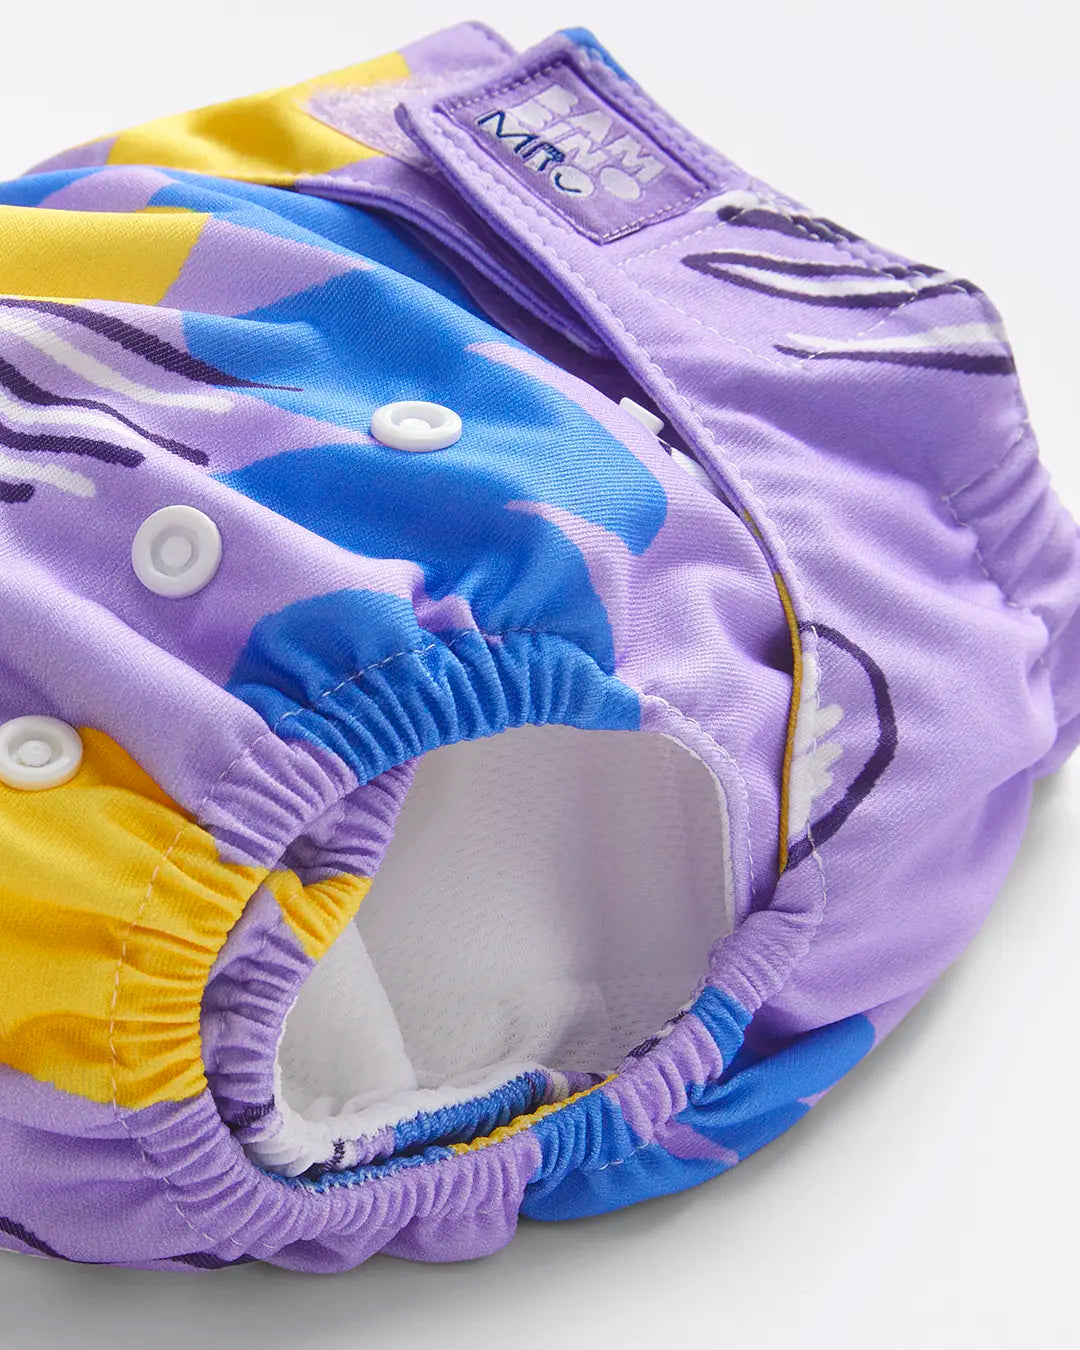 Kit de lancement couches lavables - l'essentiel pour se lancer dans une  démarche saine pour bébé et la planète